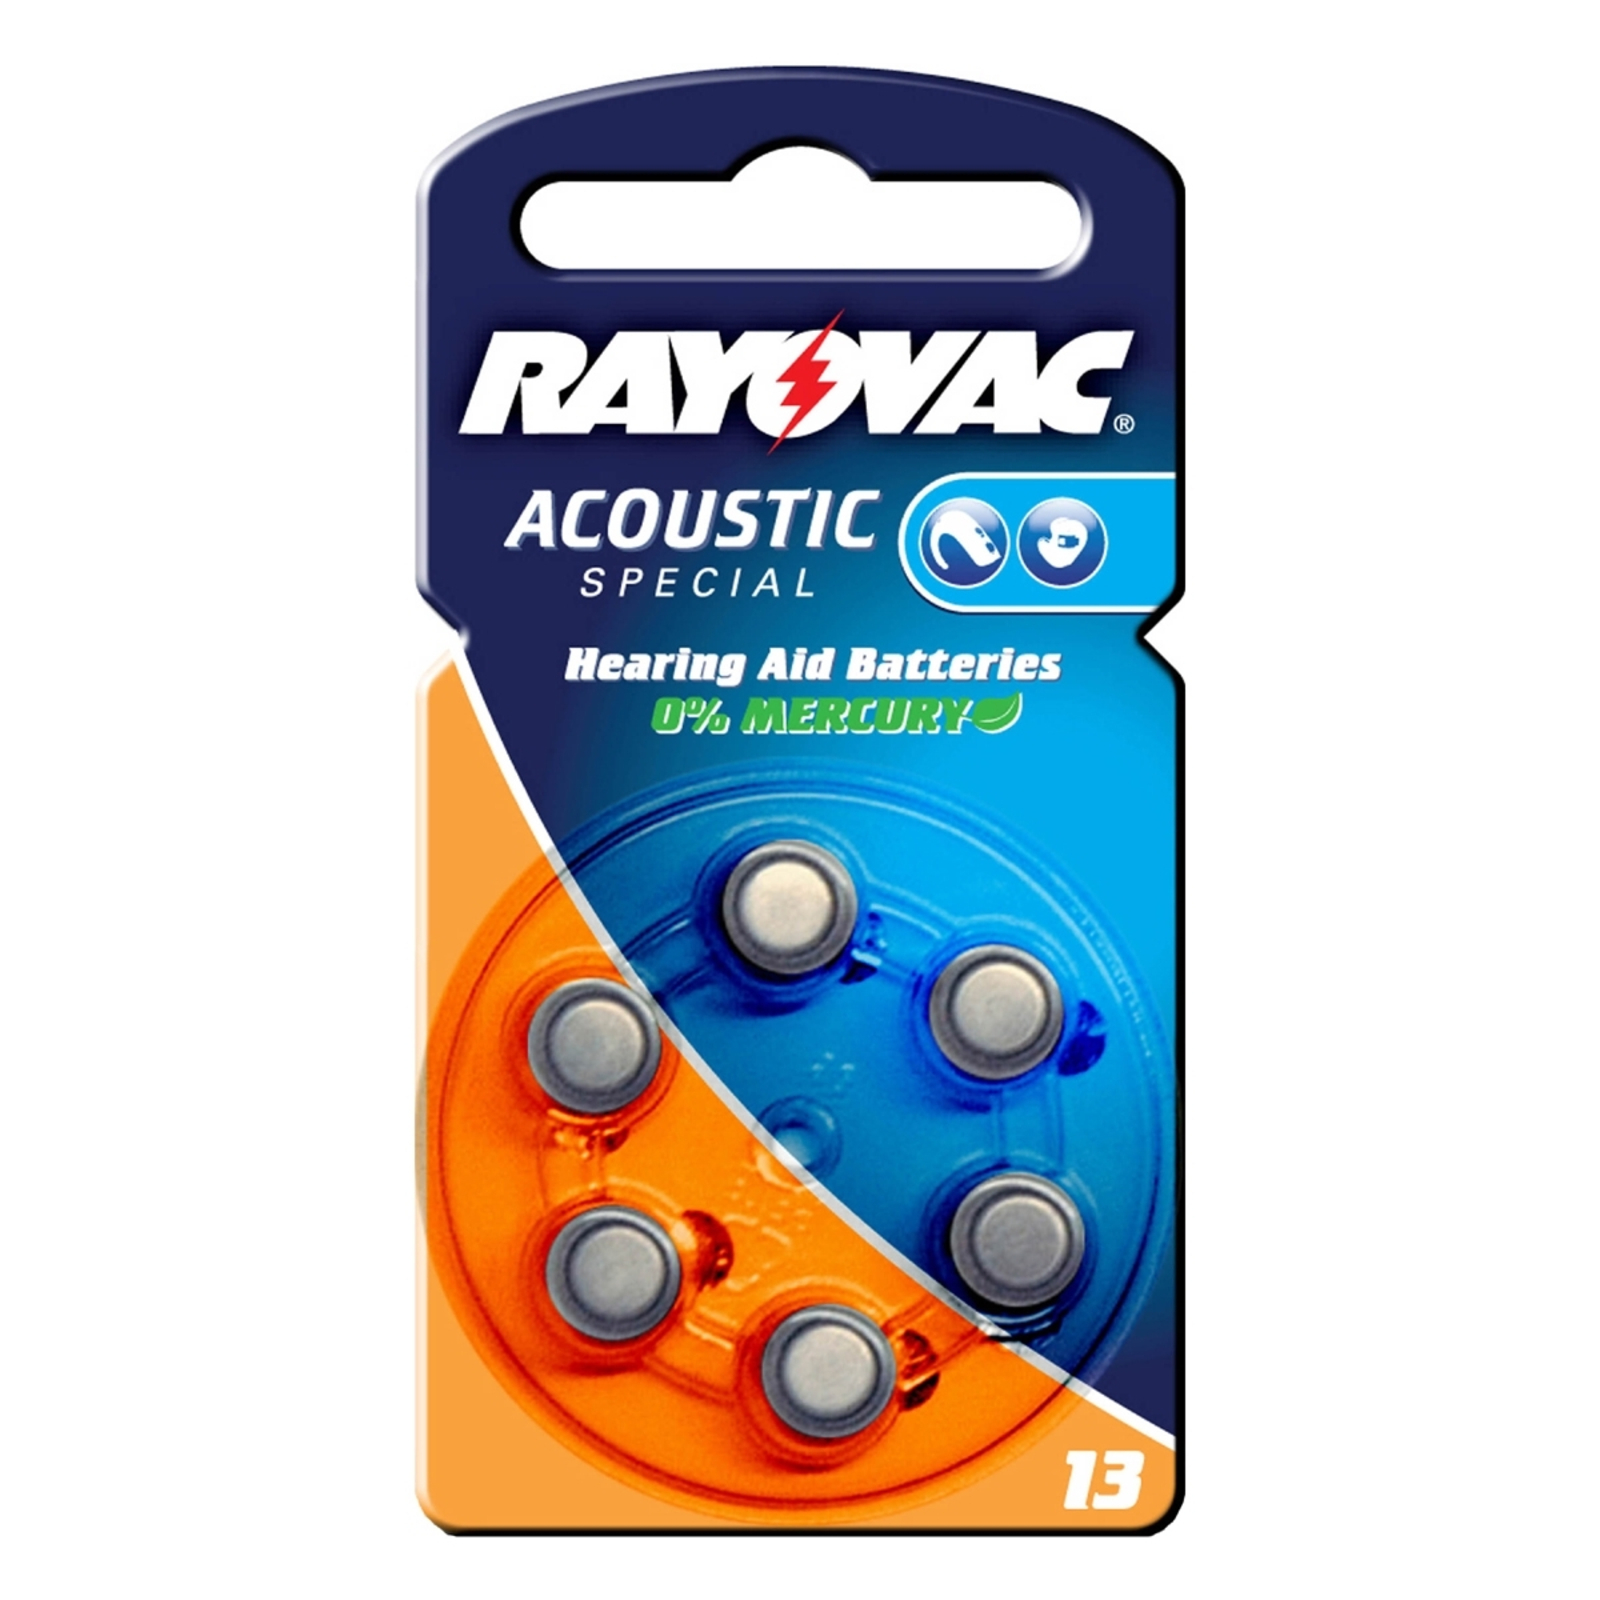 Rayovac Acoustic 1,4 V, 310 m/Ah Rayovac 13